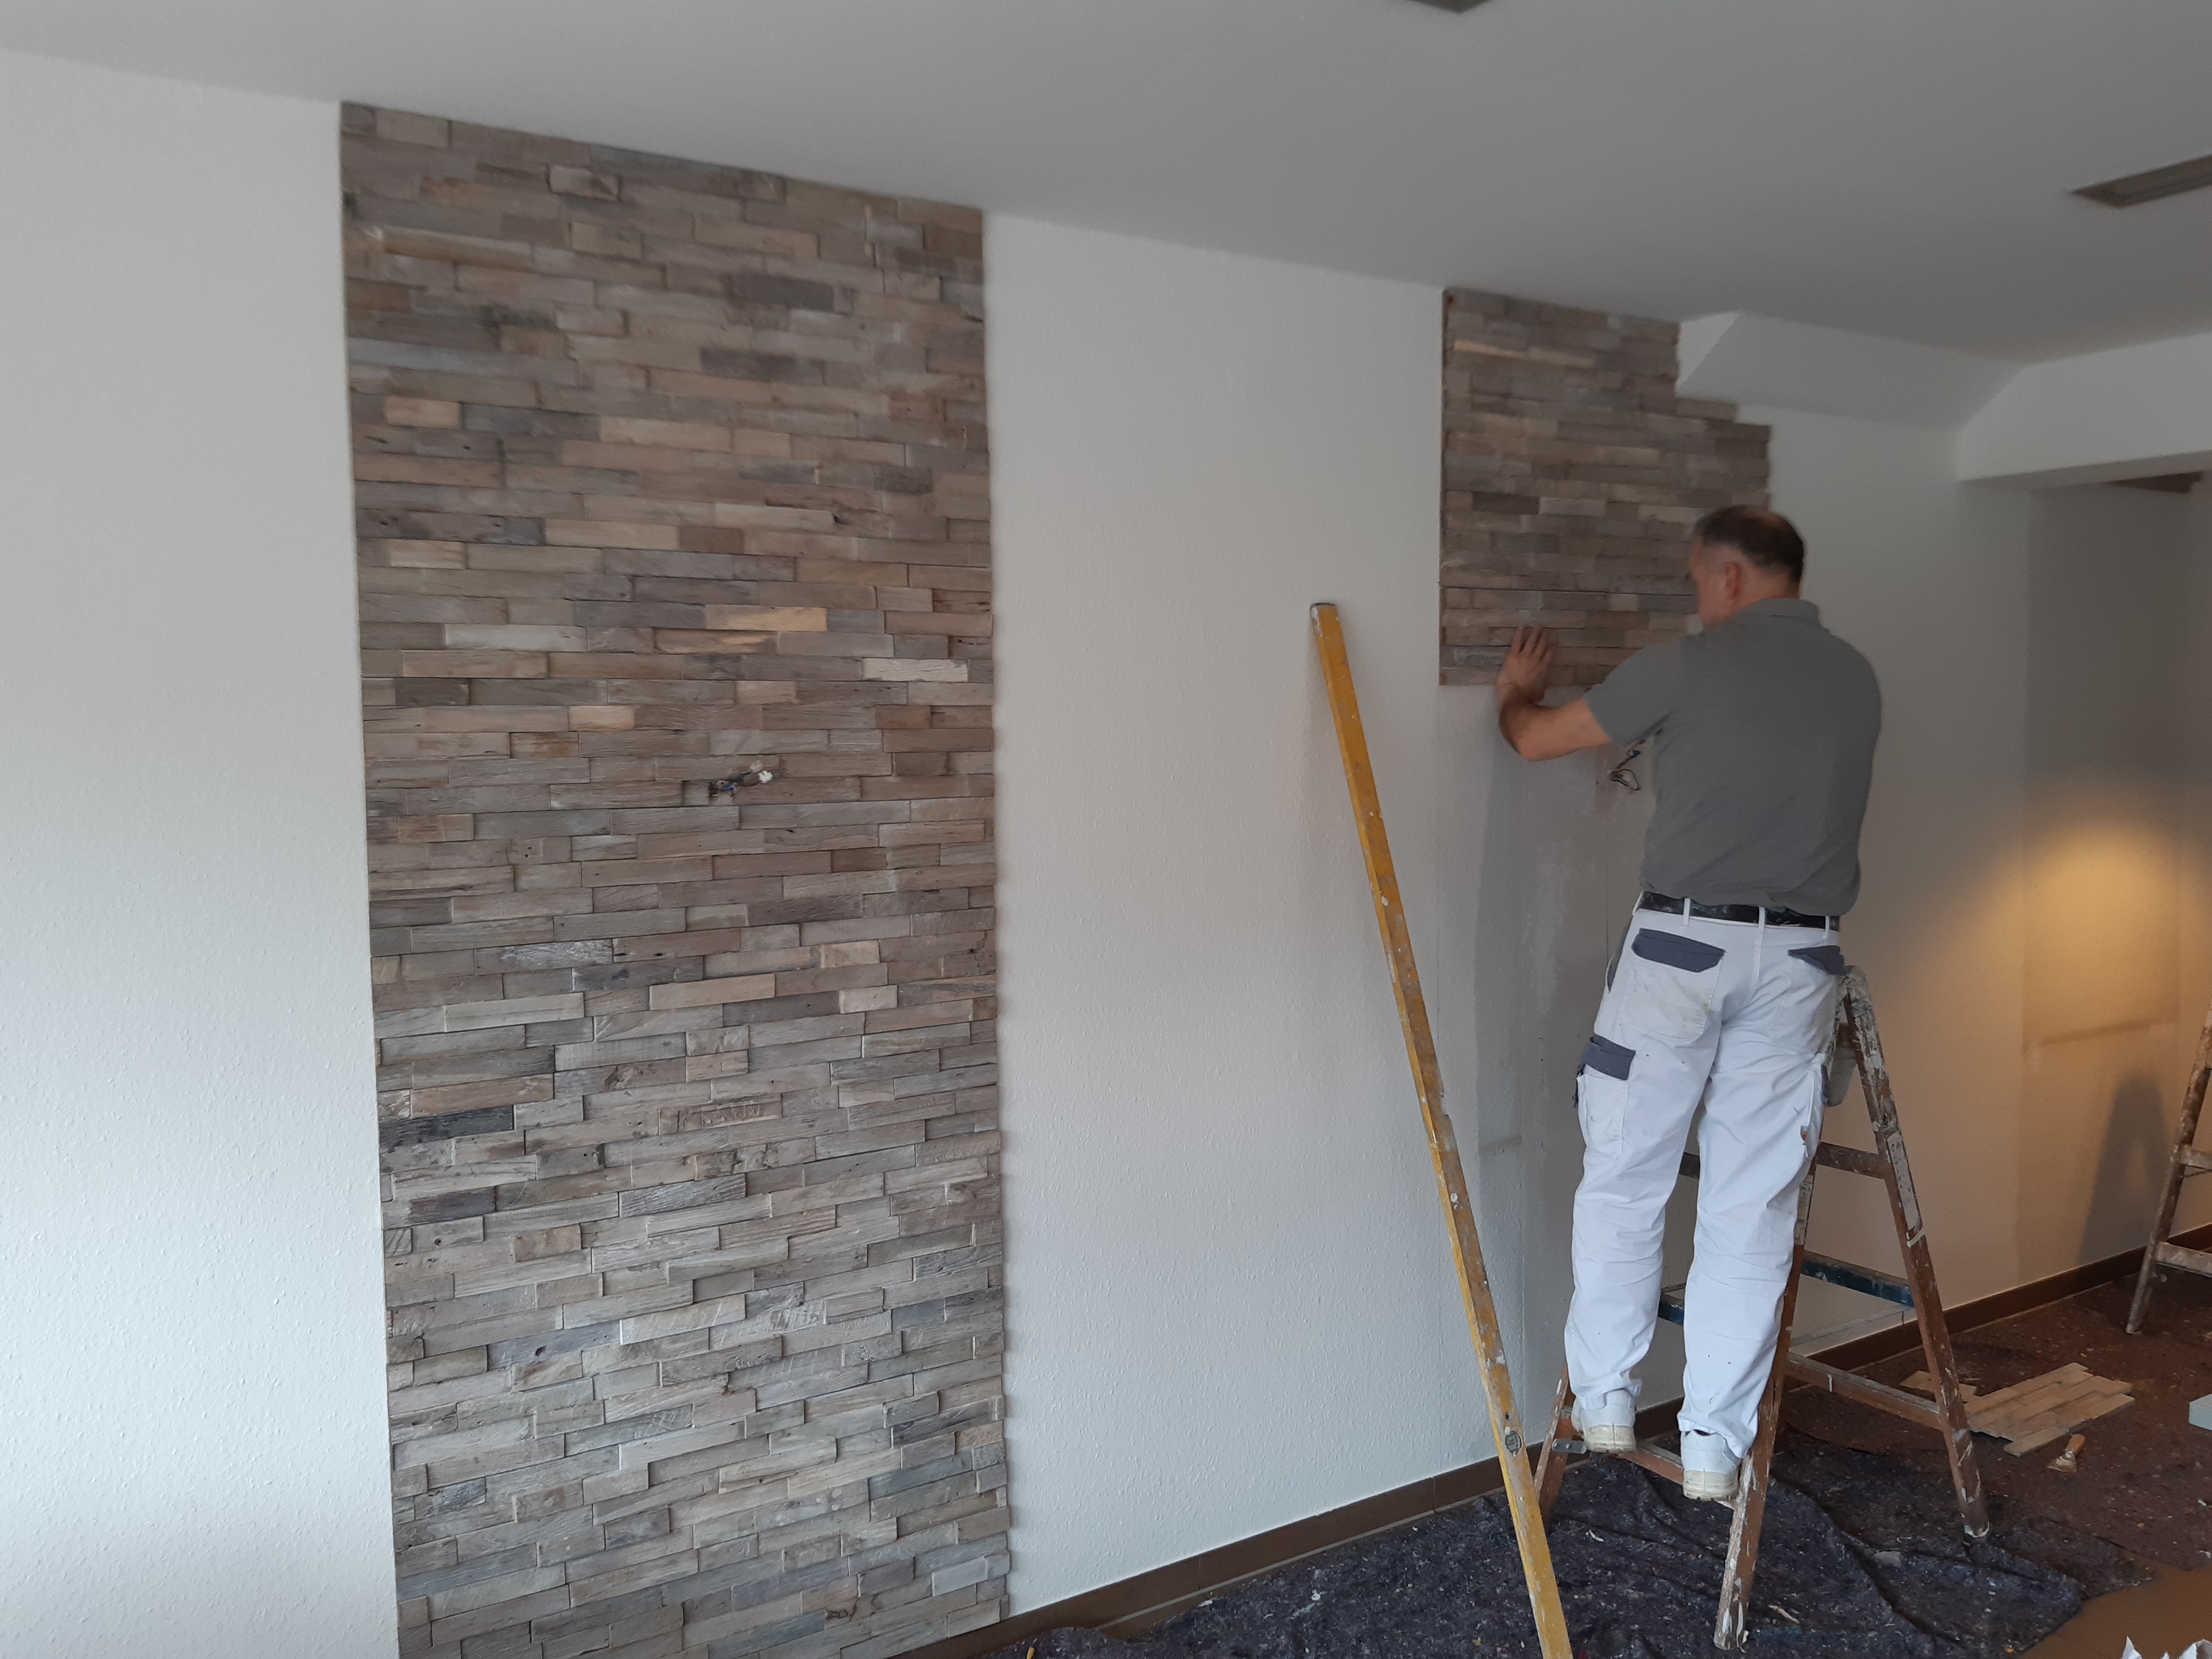 Indoor - Malerfachbetrieb Ennen in Nordhorn